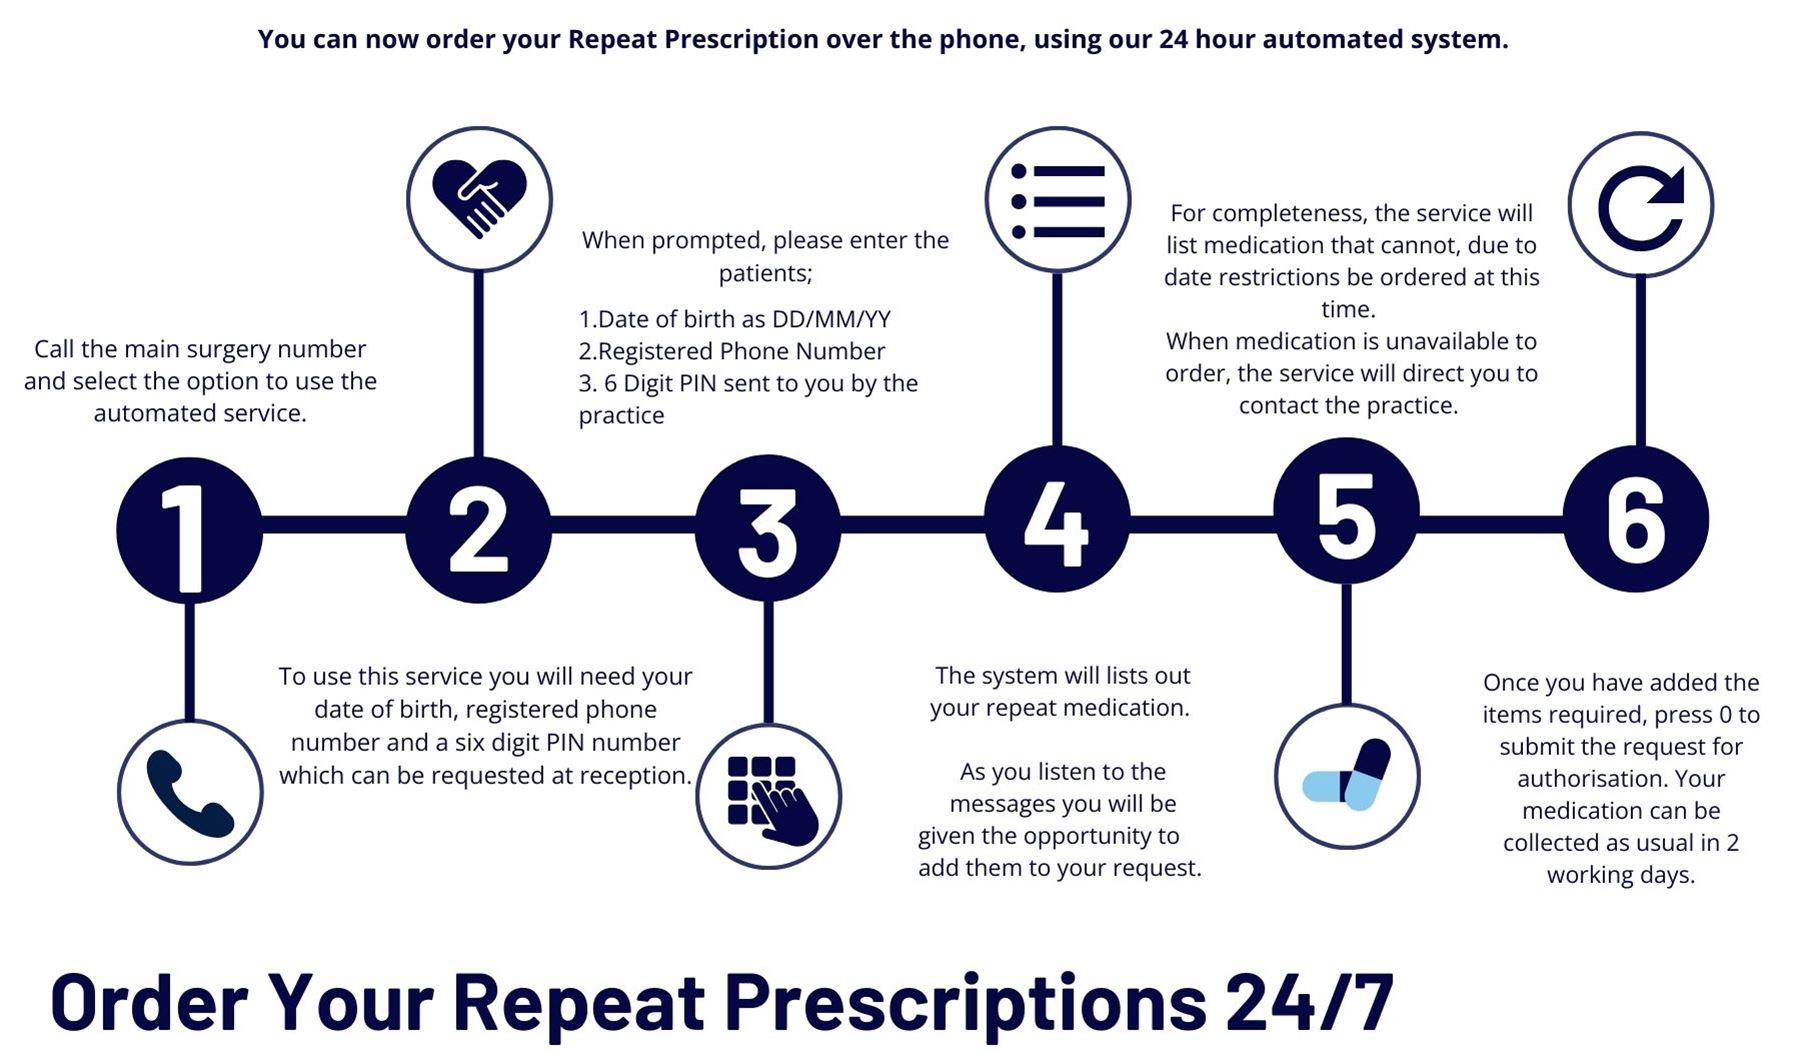 repeat prescriptions